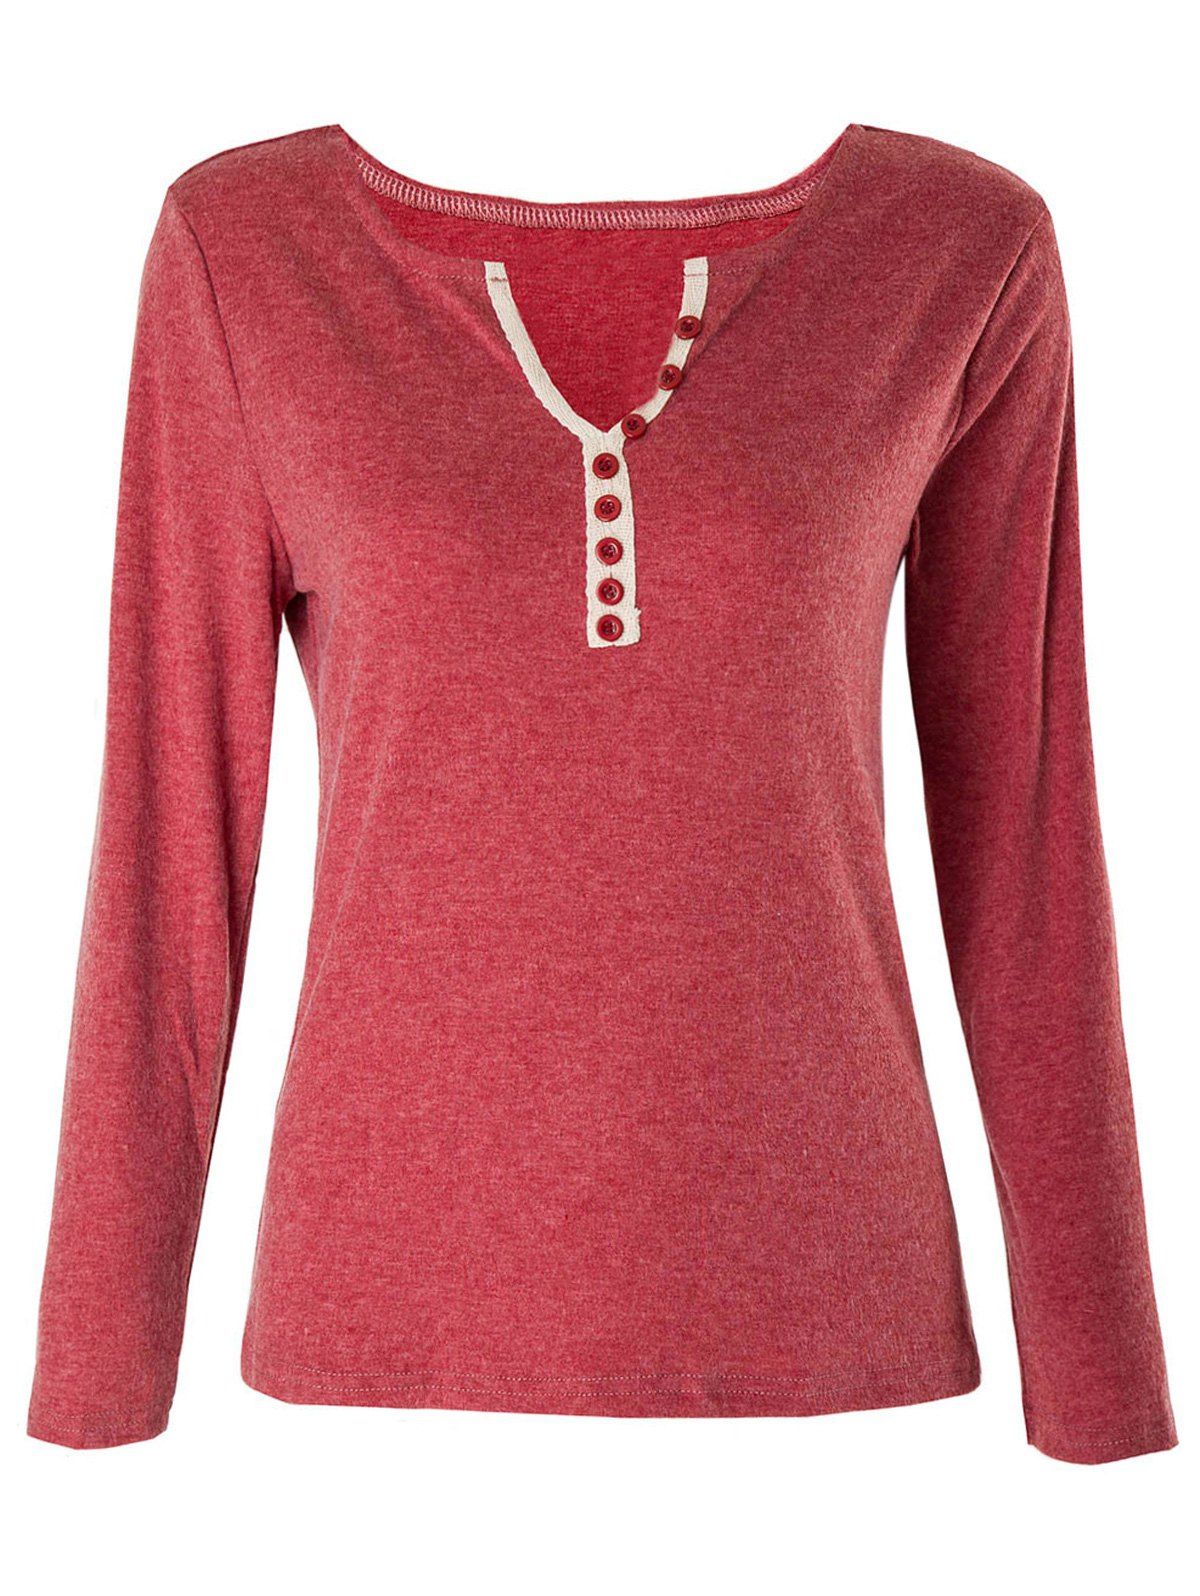 [85% OFF] Casual V-Neck Long Sleeve Button Design Women's T-Shirt | Rosegal